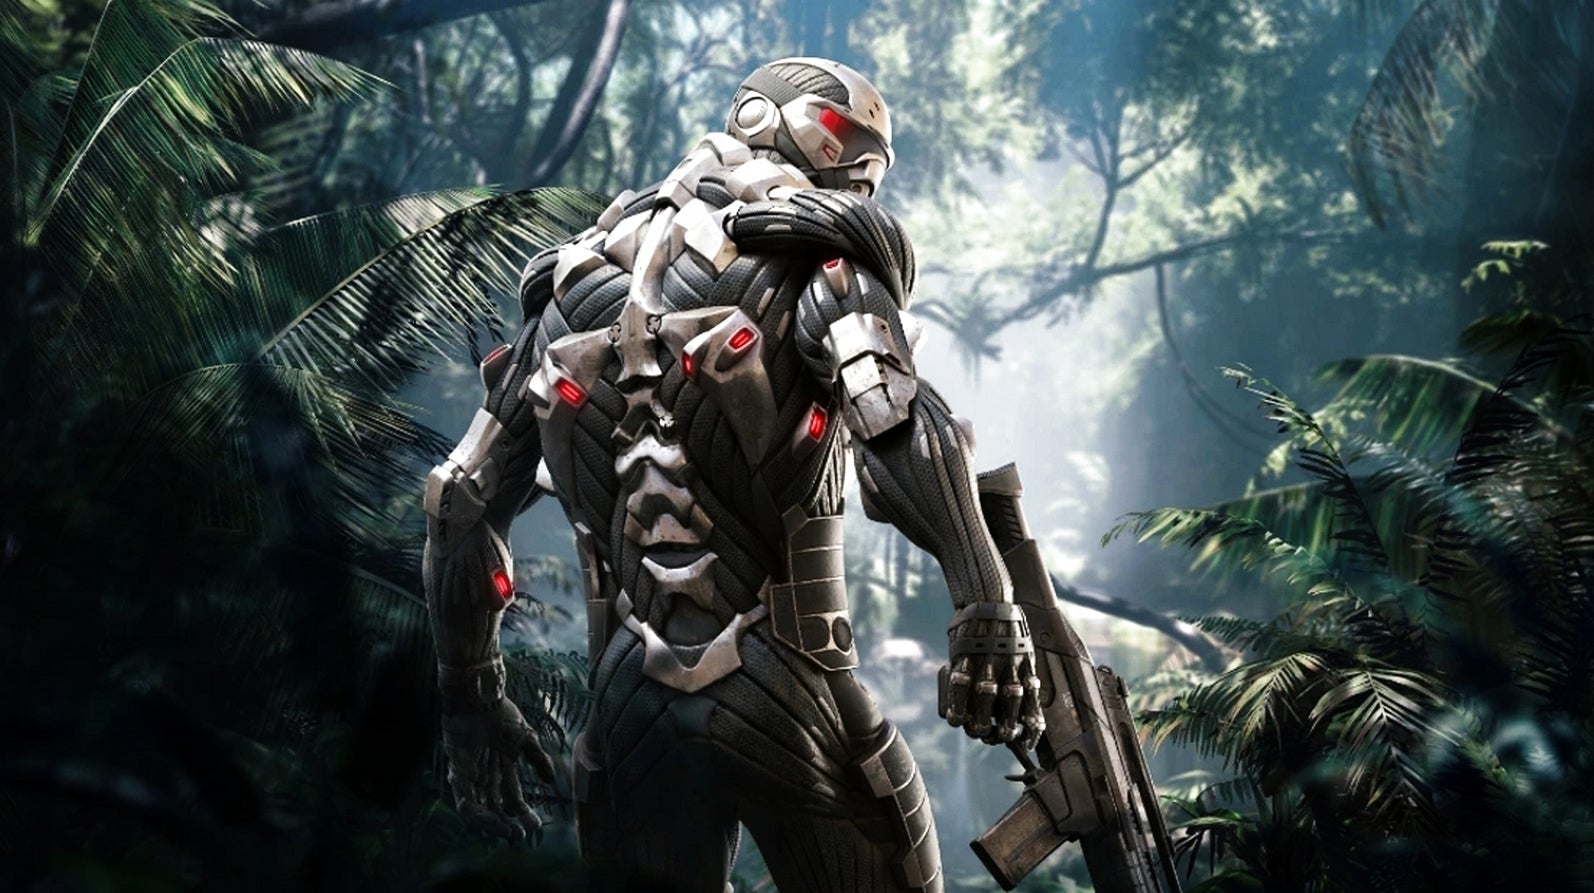 Bilder zu Crysis Remastered erscheint am 18. September 2020 für PC, PS4 und Xbox One